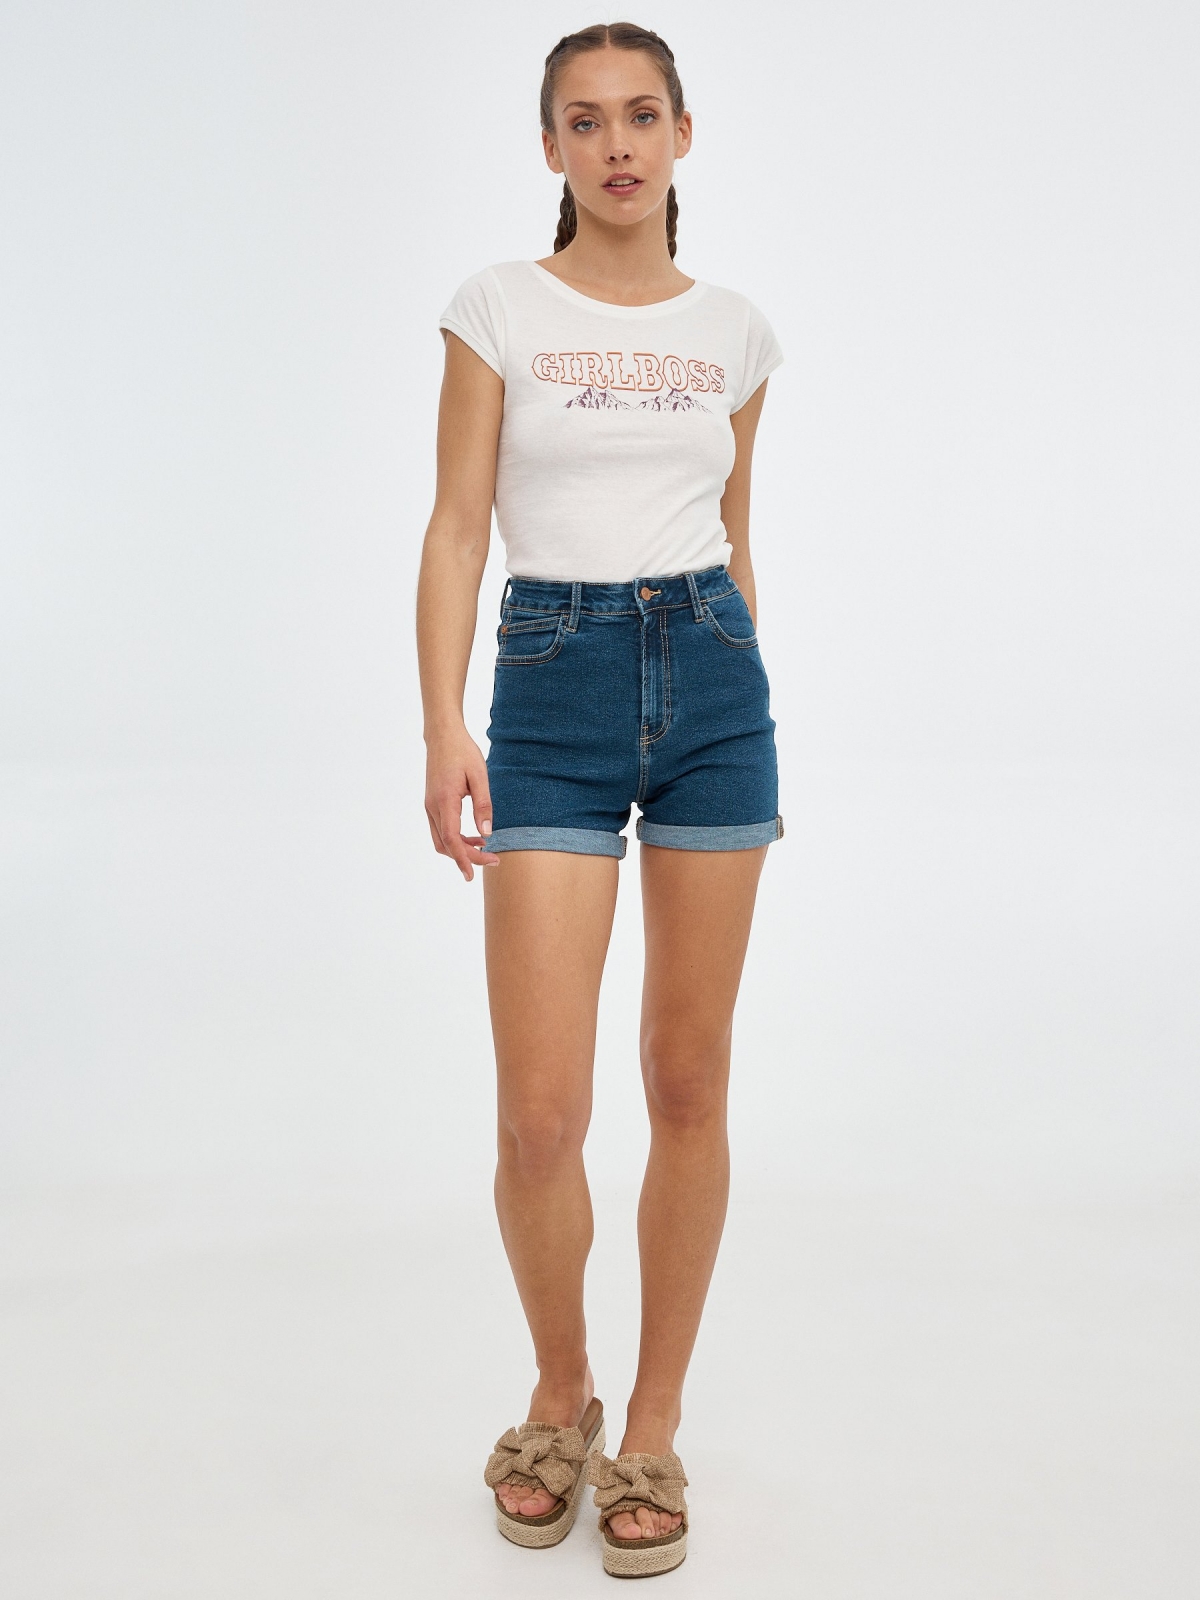 Girlboss print T-shirt off white front view